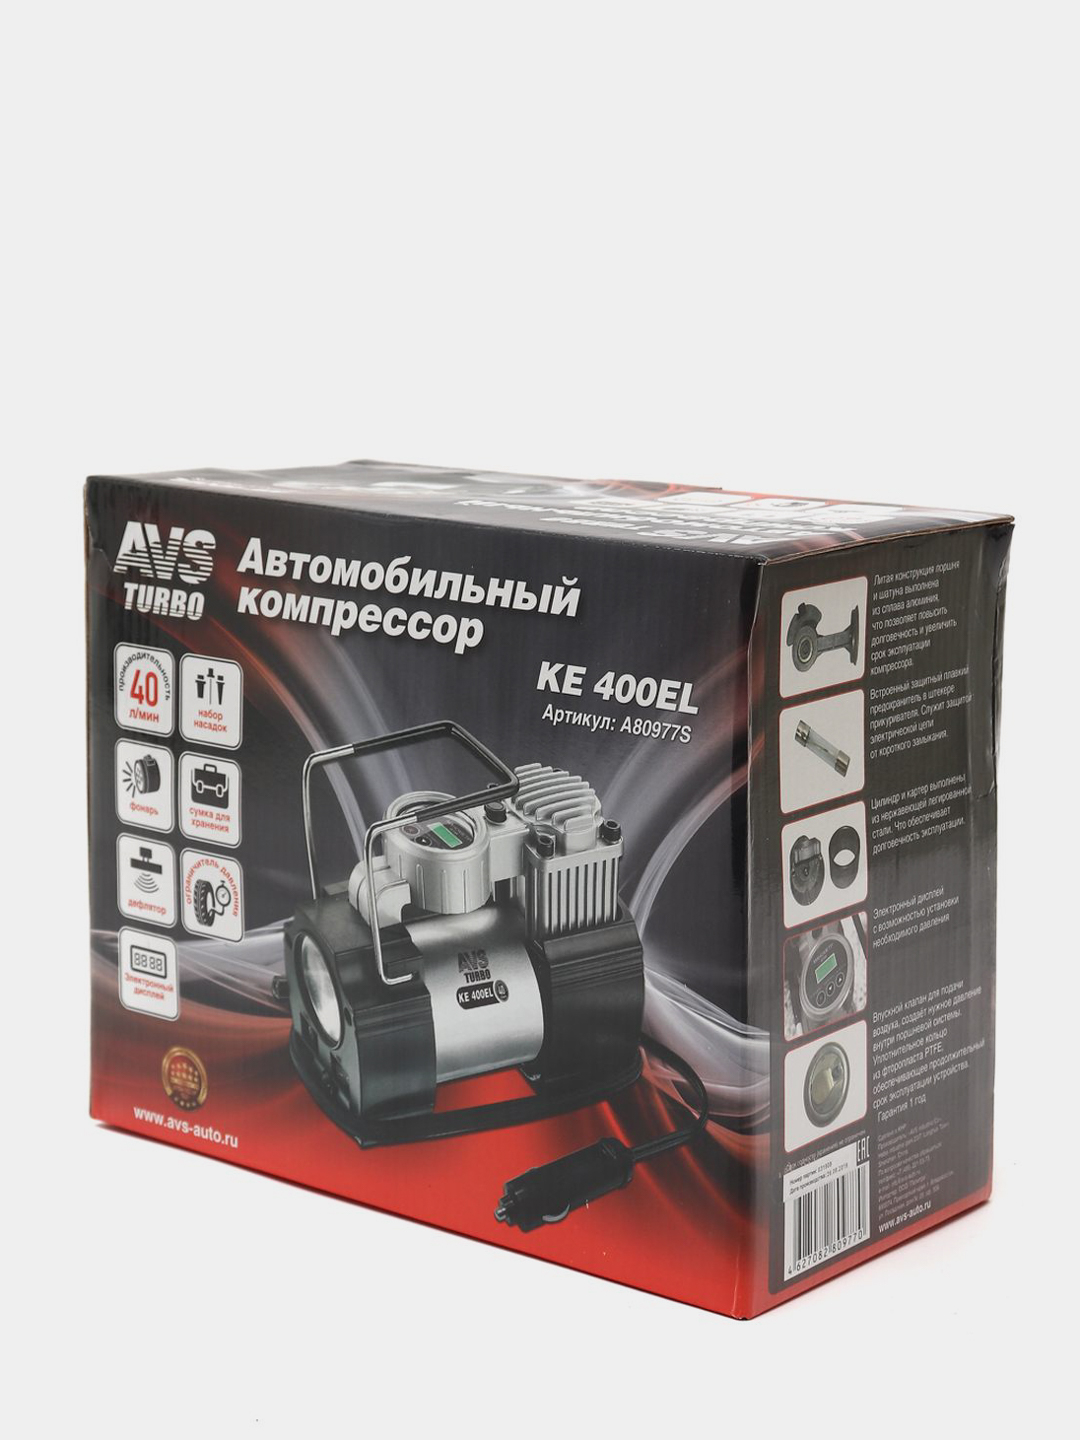 Компрессор автомобильный AVS KE400EL автокомпрессор для подкачки шин .